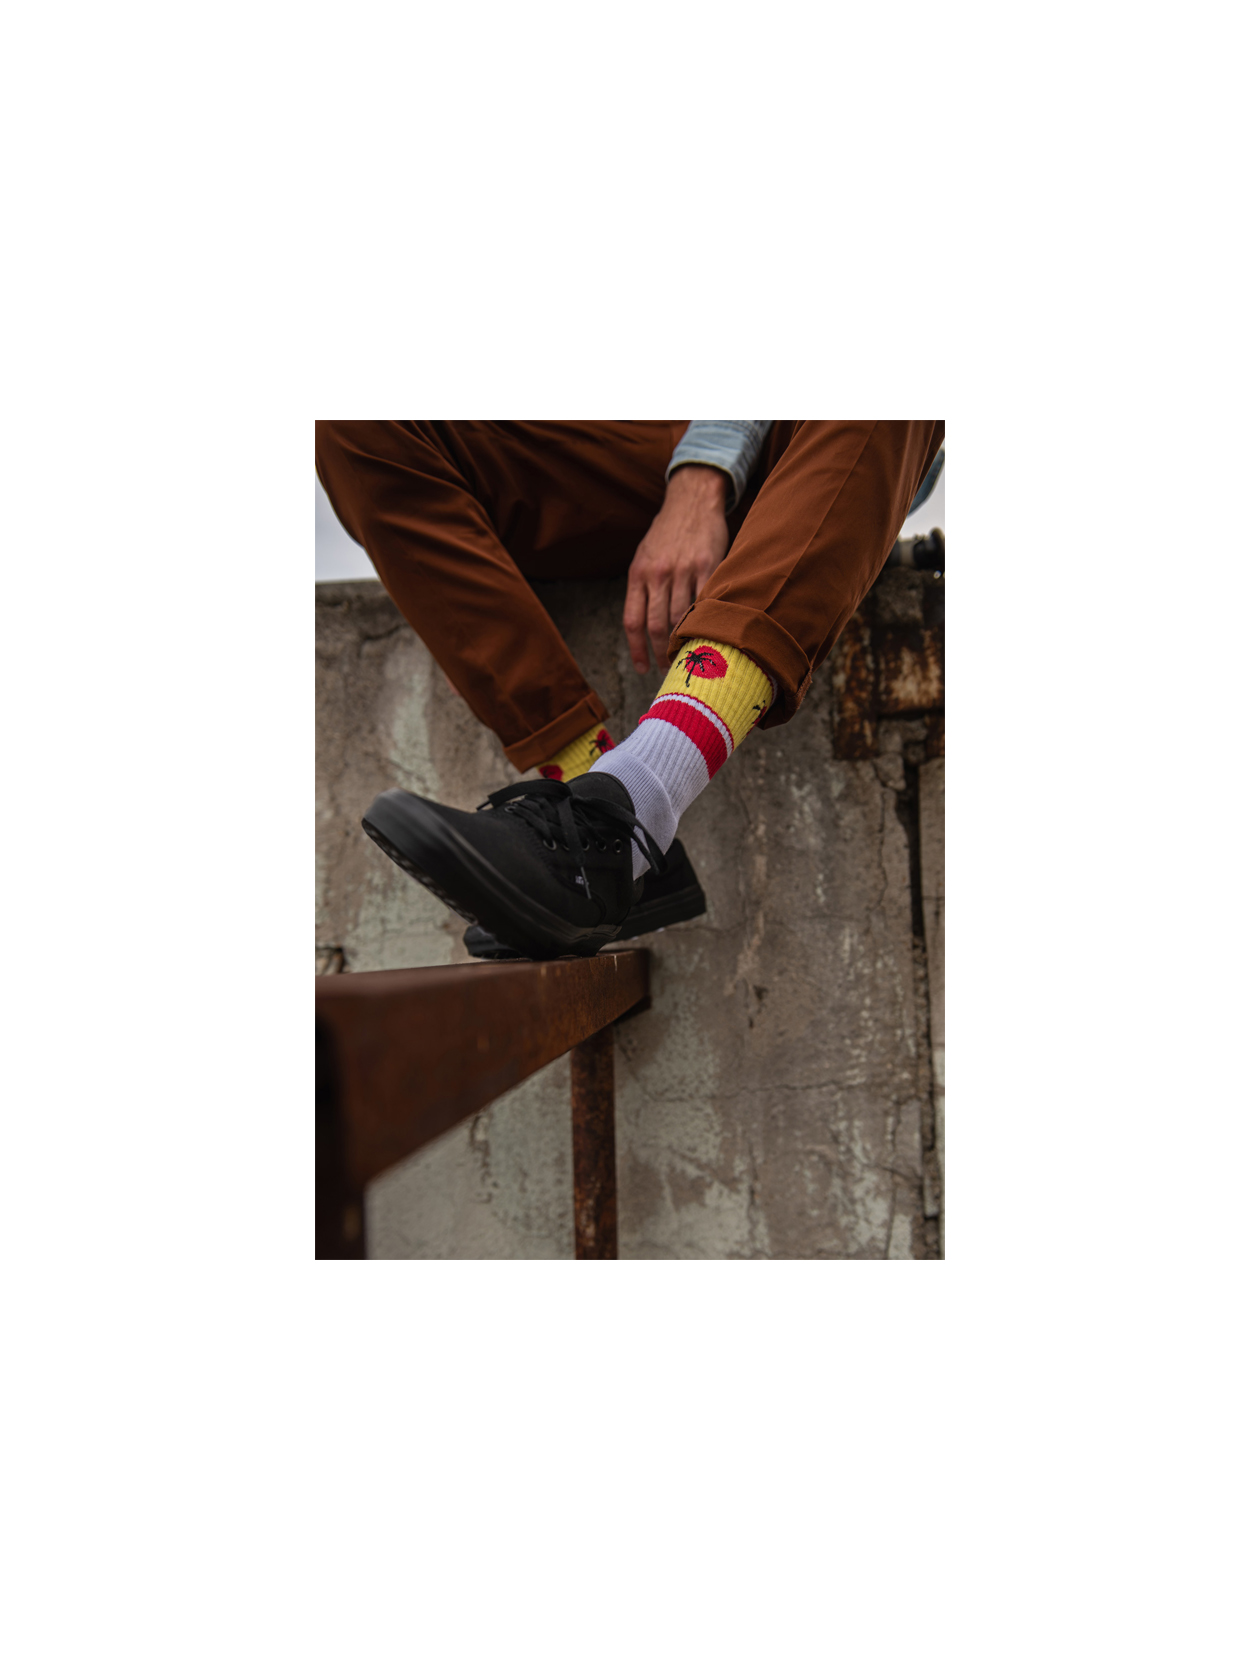 Панталон Scotch & Soda от Collective, тениска Trasher Skate Mag и кецове Vans от BLOK, чорапи Venice от Stinky Socks